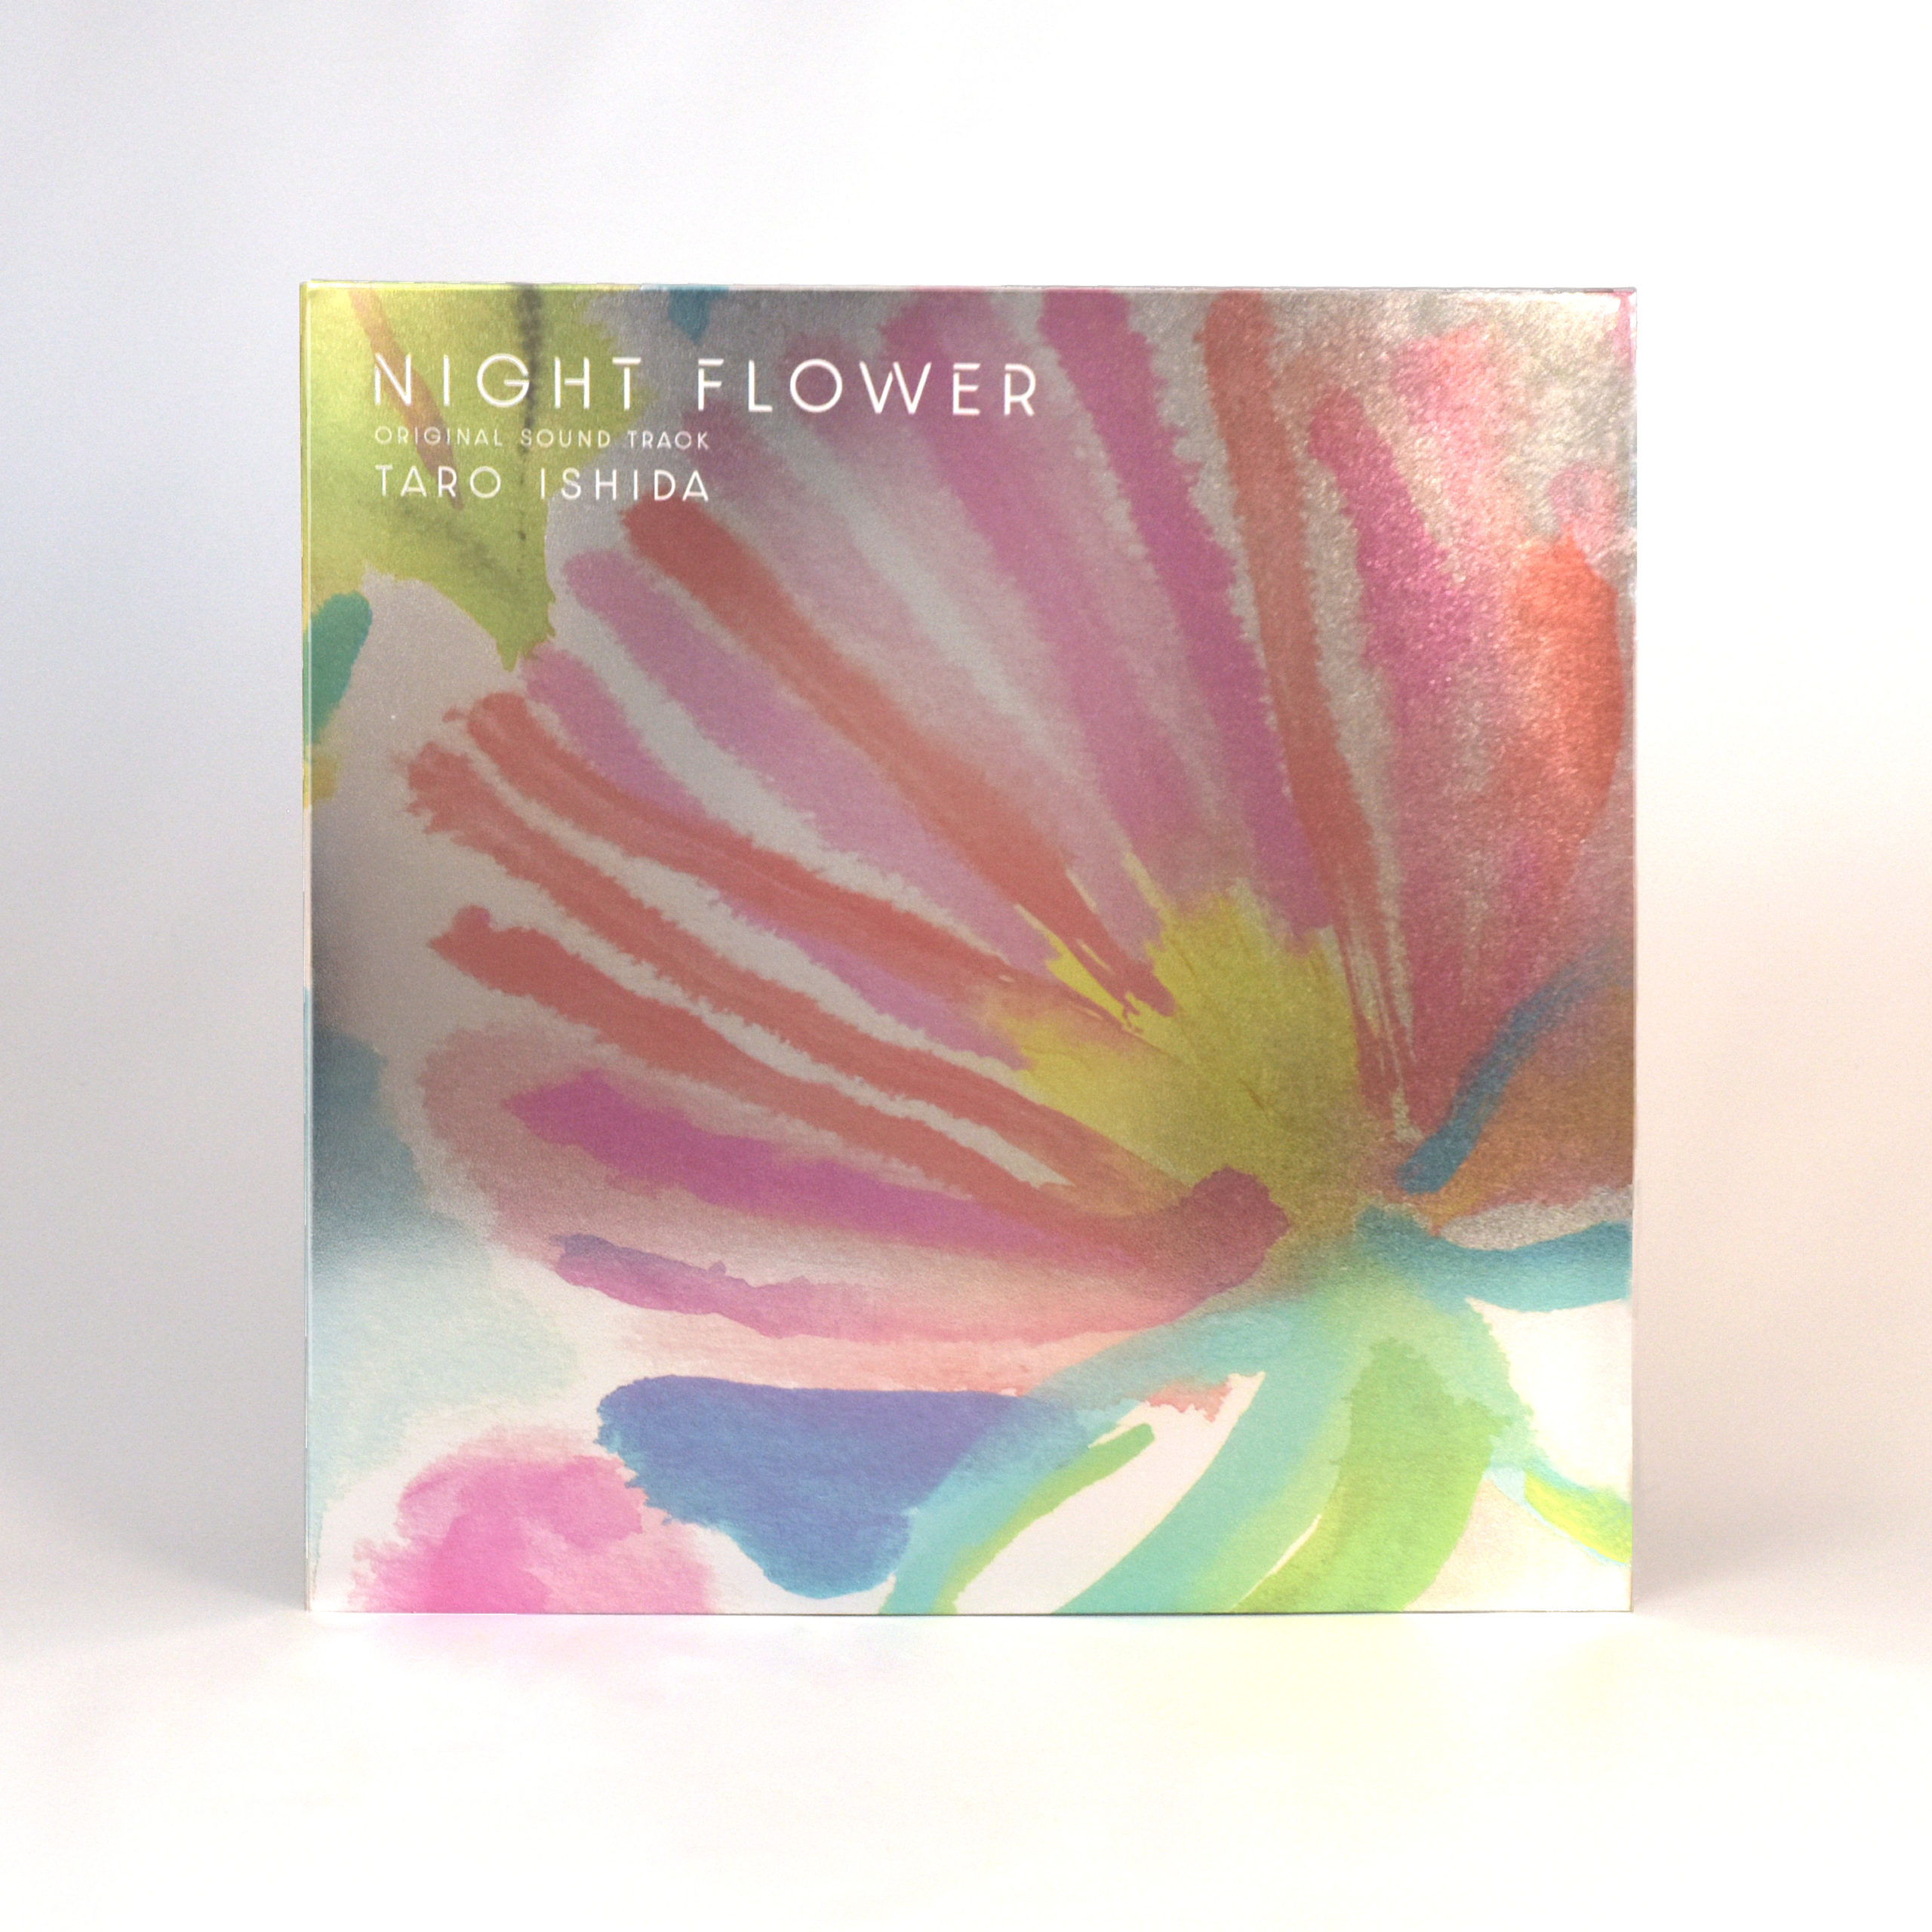 オリジナル・サウンドトラック『NIGHT FLOWER』